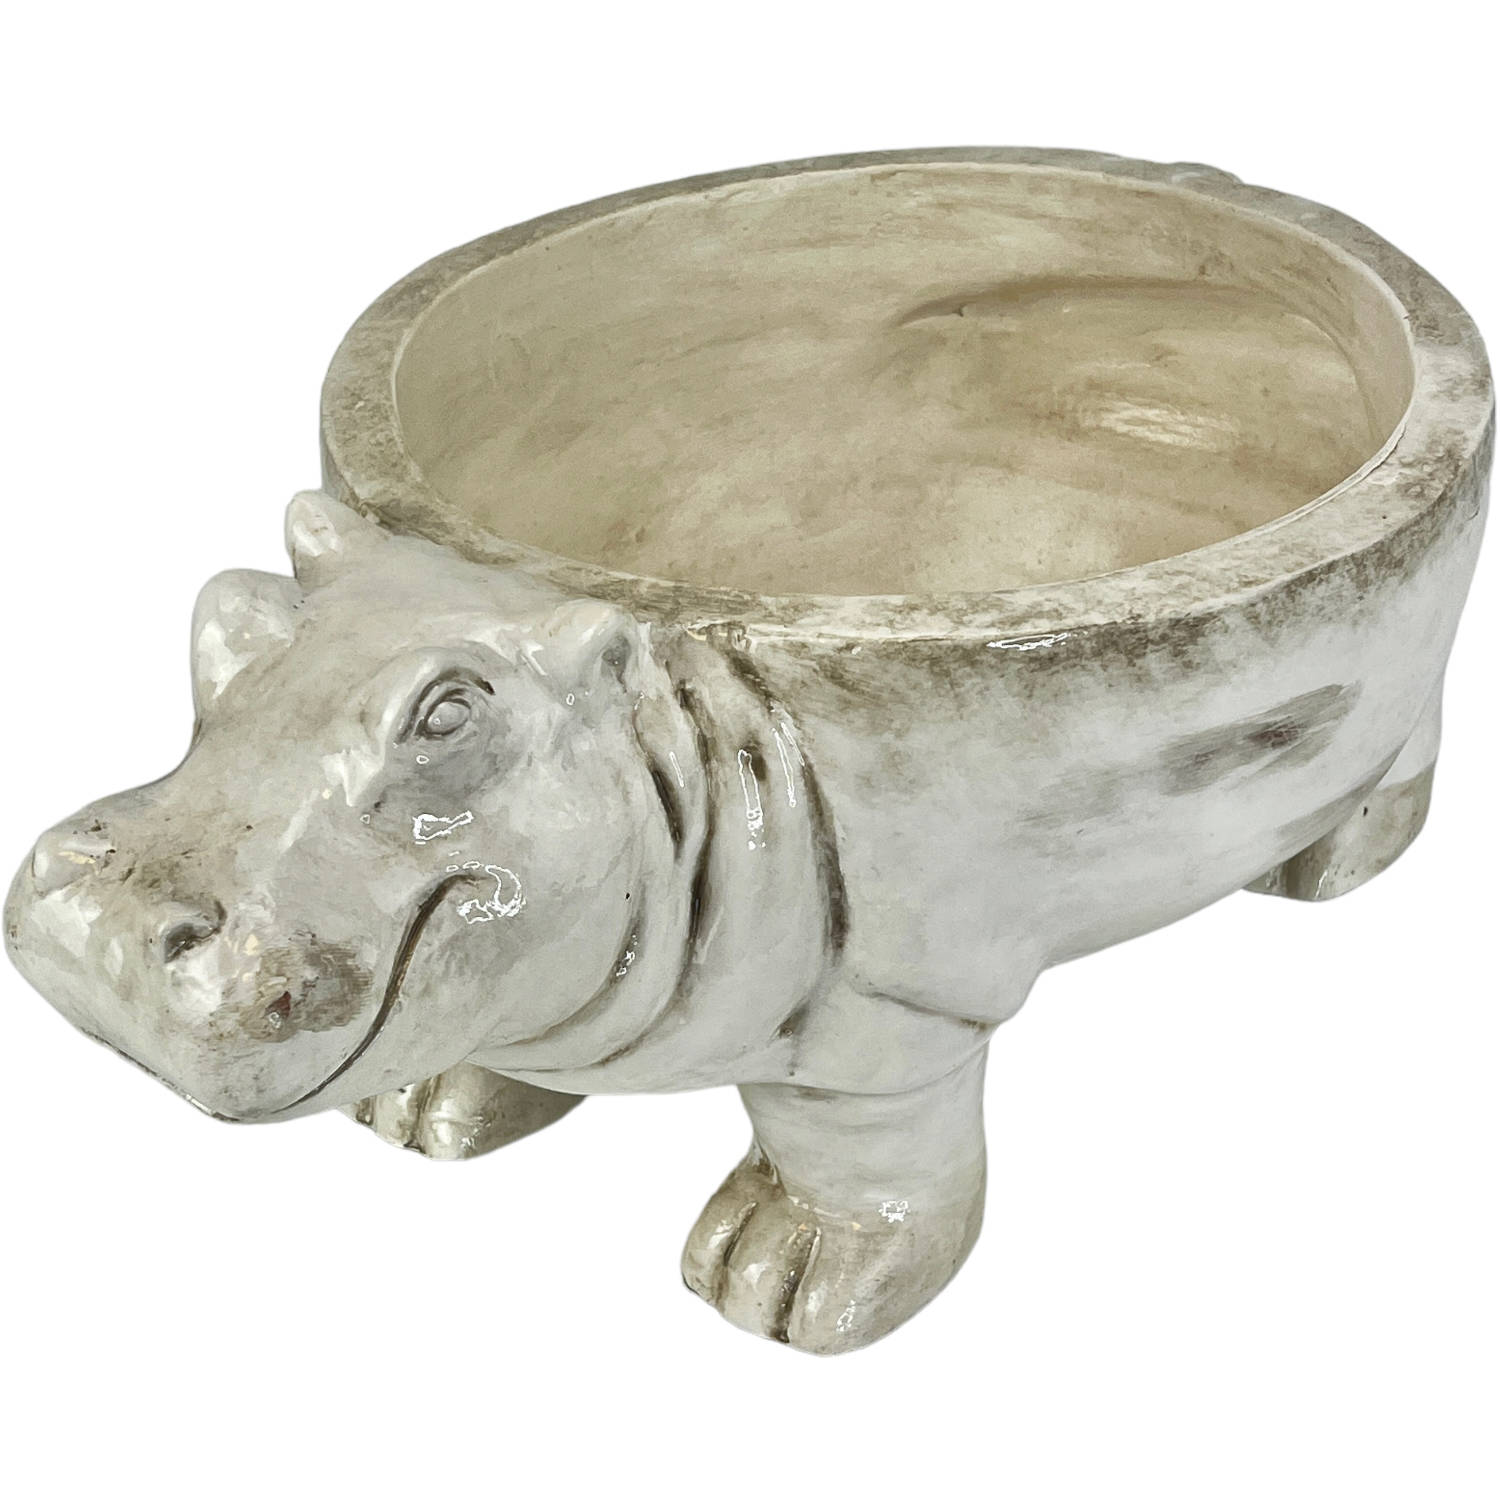 Parlane schaal Hippo grijs 40 cm - decoratieve schaal - schaal in de vorm van een nijlpaard - keramieken schaal - schaal op pootjes